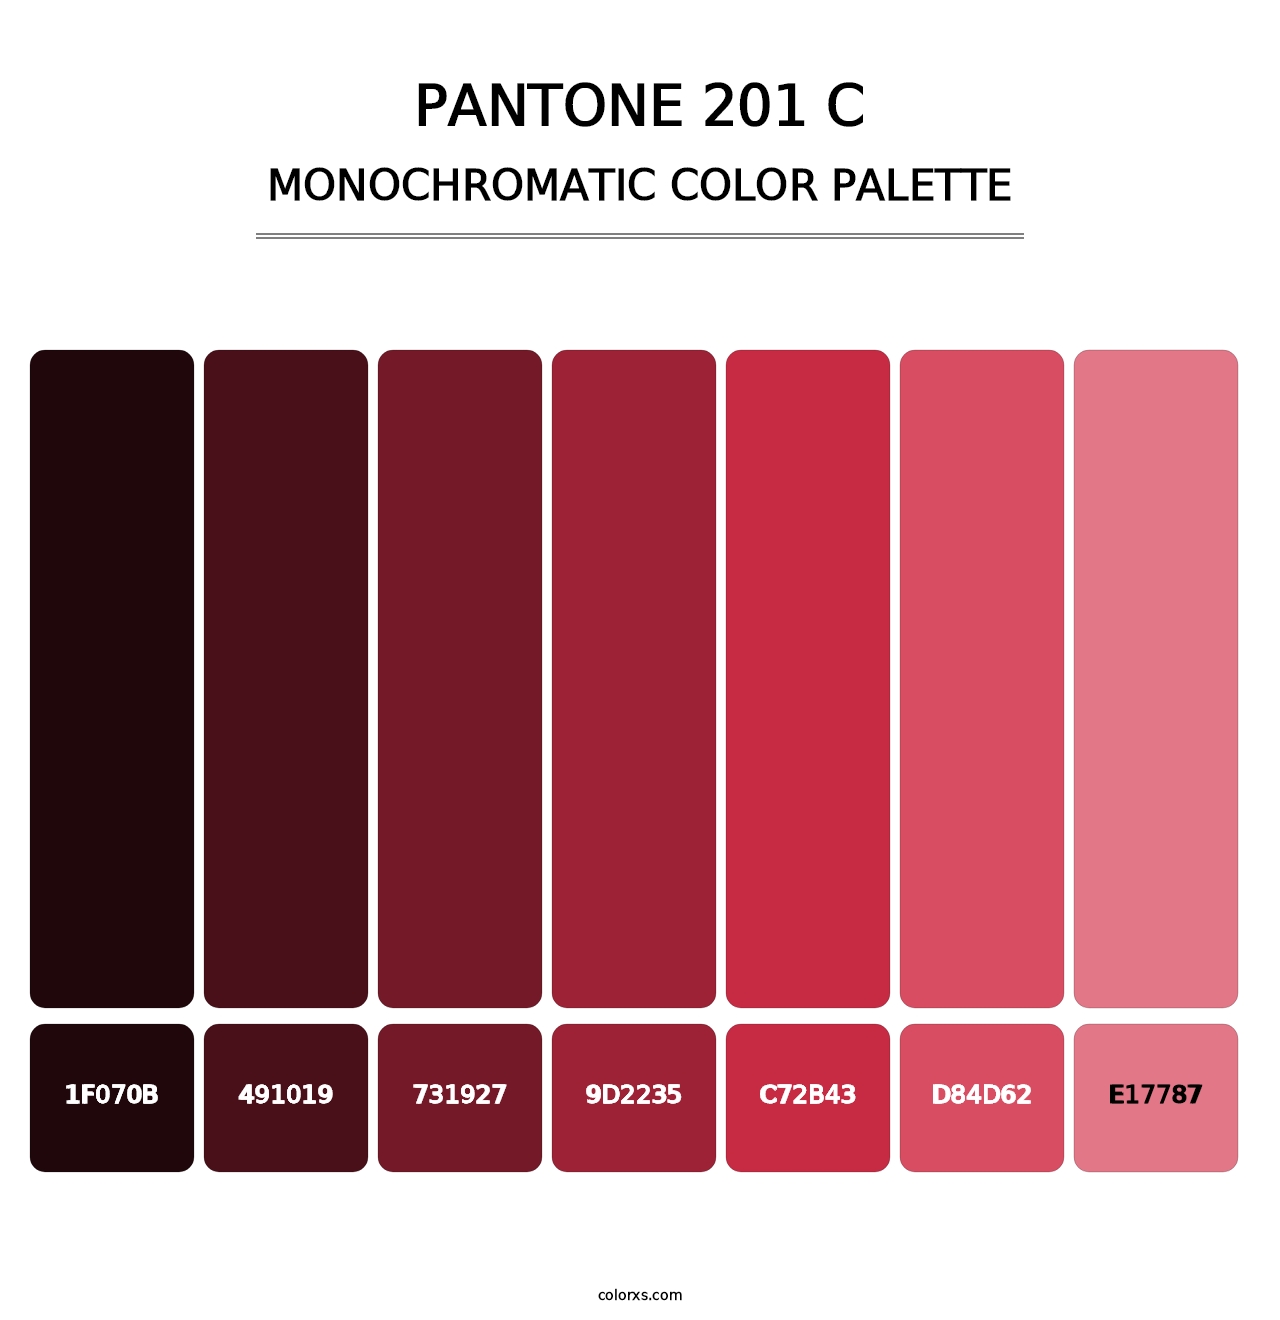 PANTONE 201 C - Monochromatic Color Palette